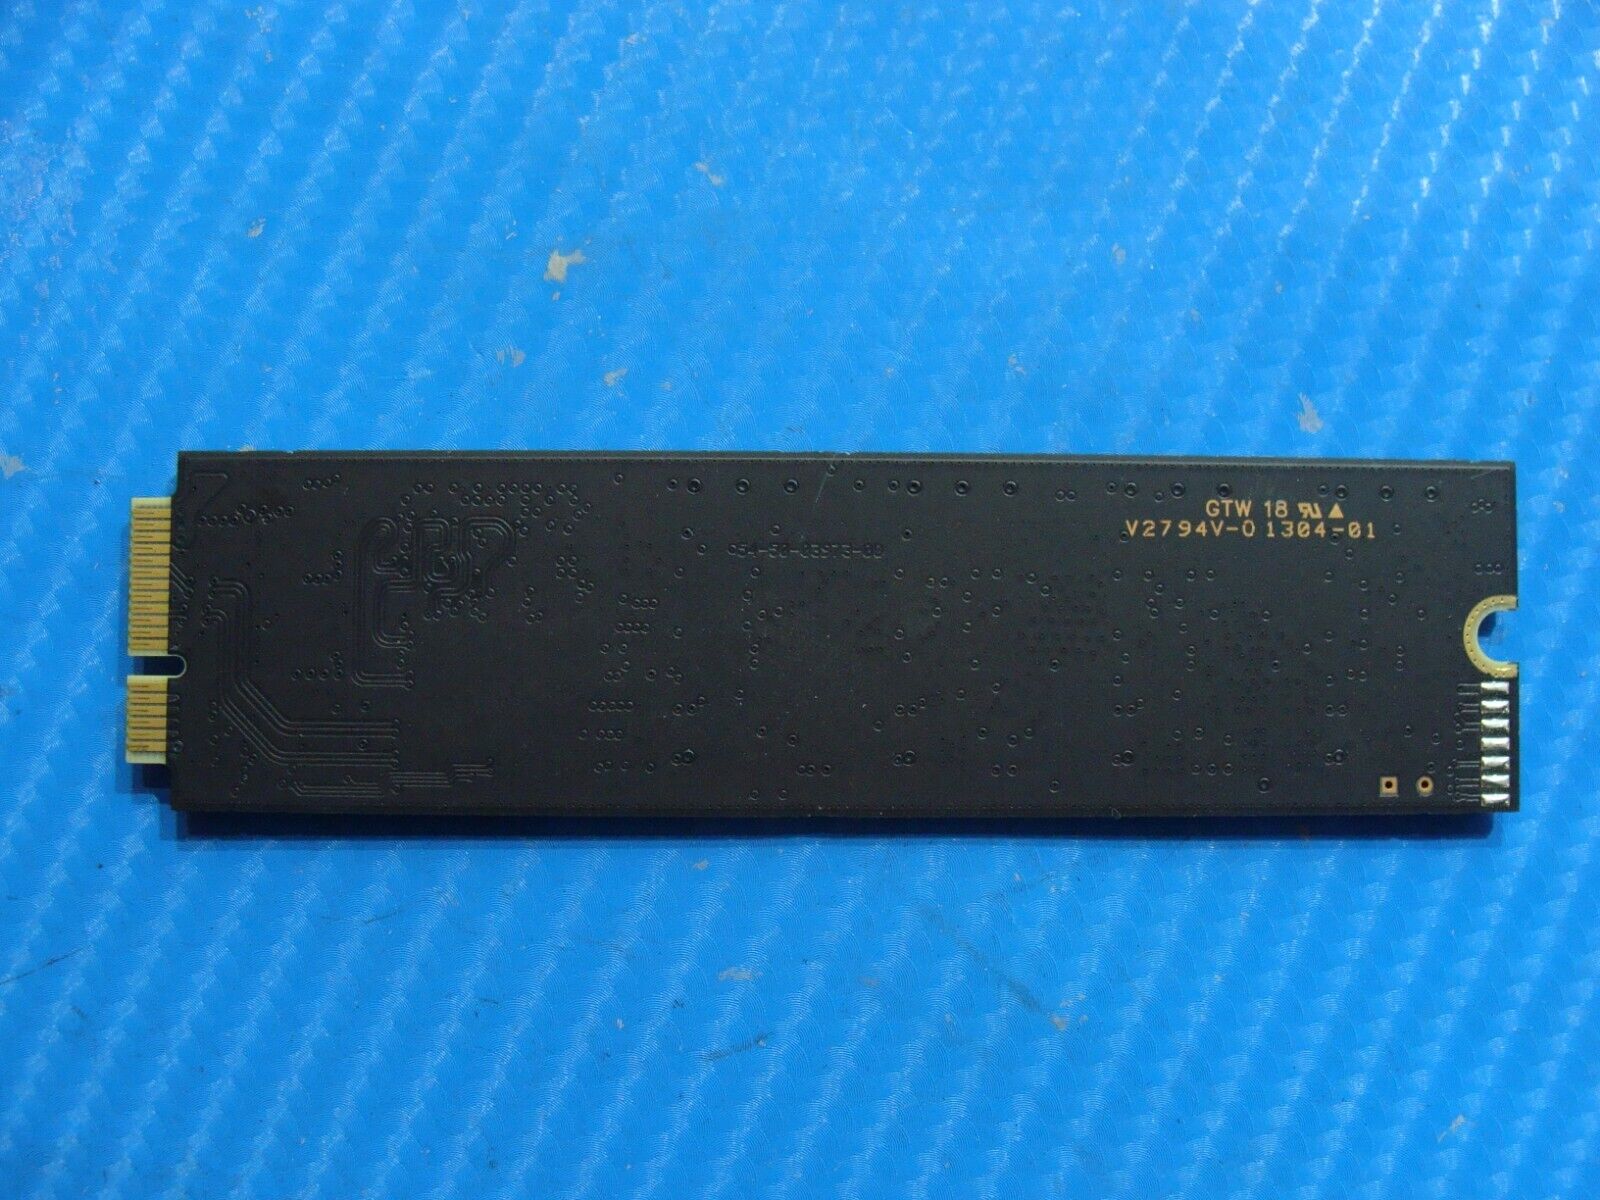 UX31A 13.3" SanDisk 128GB mSATA Solid State Drive SD5SE2-128G-1002E